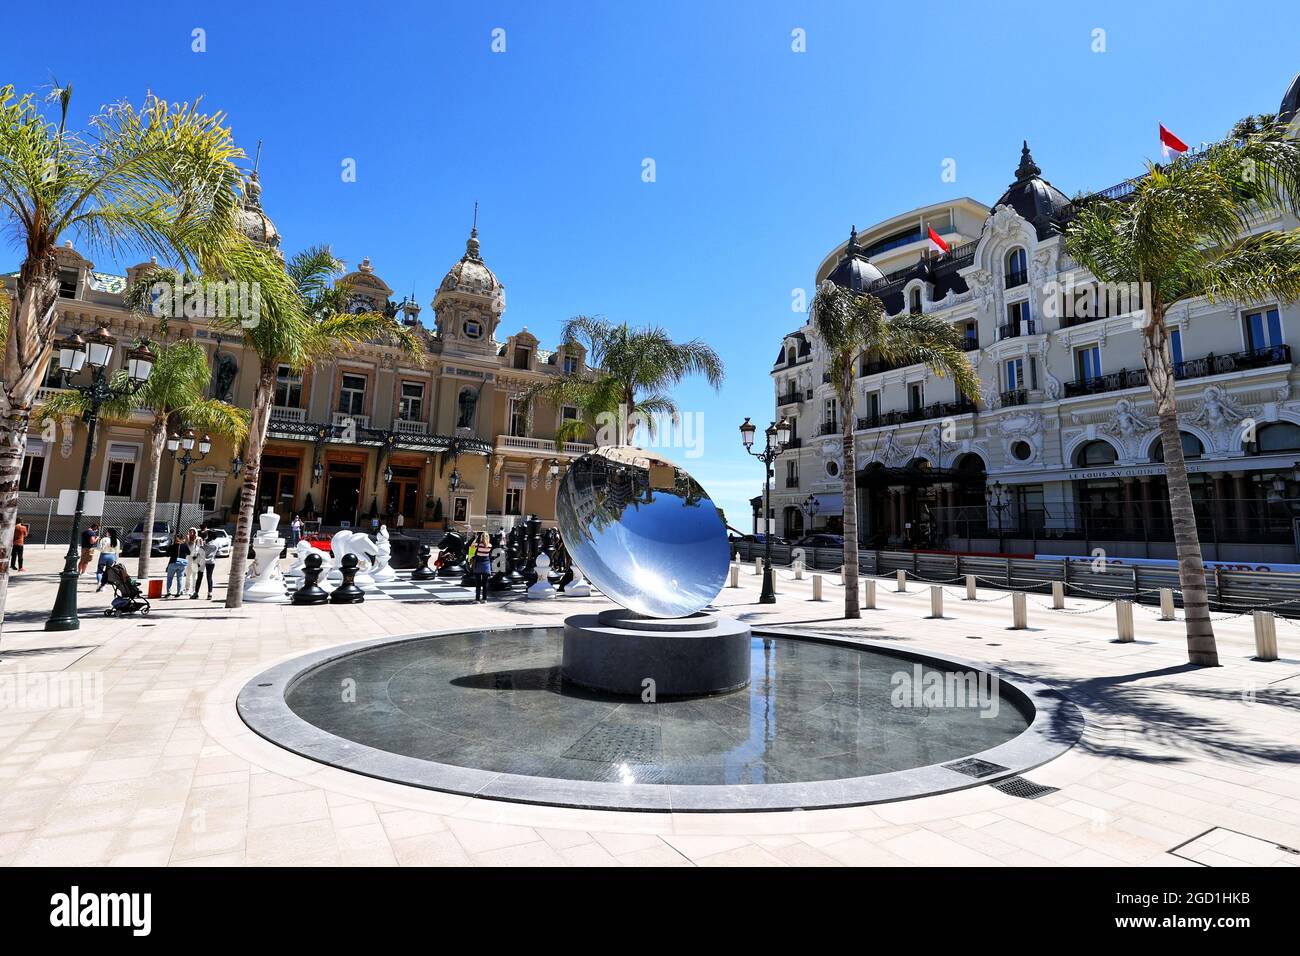 Scenic Monaco - mirror ball fountain outside the Casino. Monaco Grand Prix, Wednesday 19th May 2021. Monte Carlo, Monaco. Stock Photo